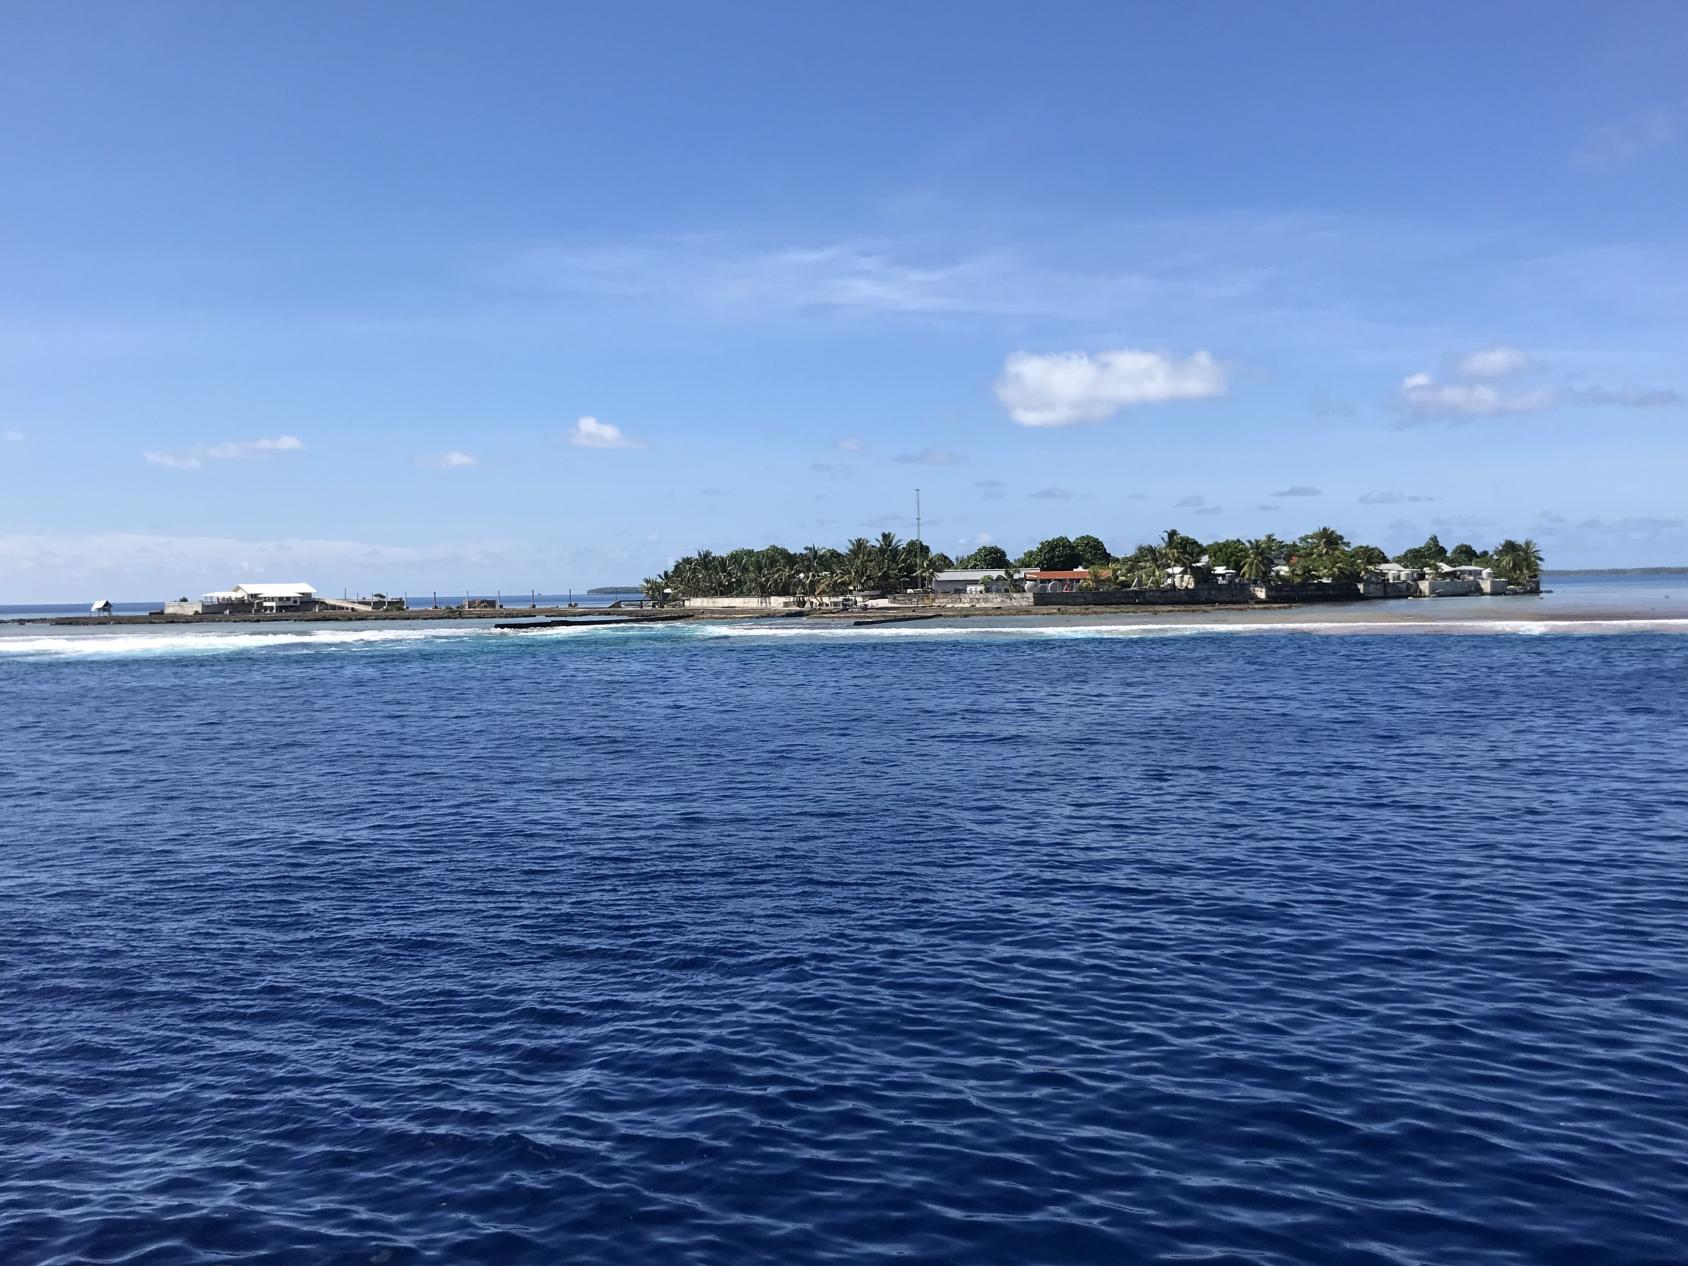 Una vista del paisaje de una pequeña nación insular donde las casas y el comercio son visibles desde una panorámica capturada desde el océano.